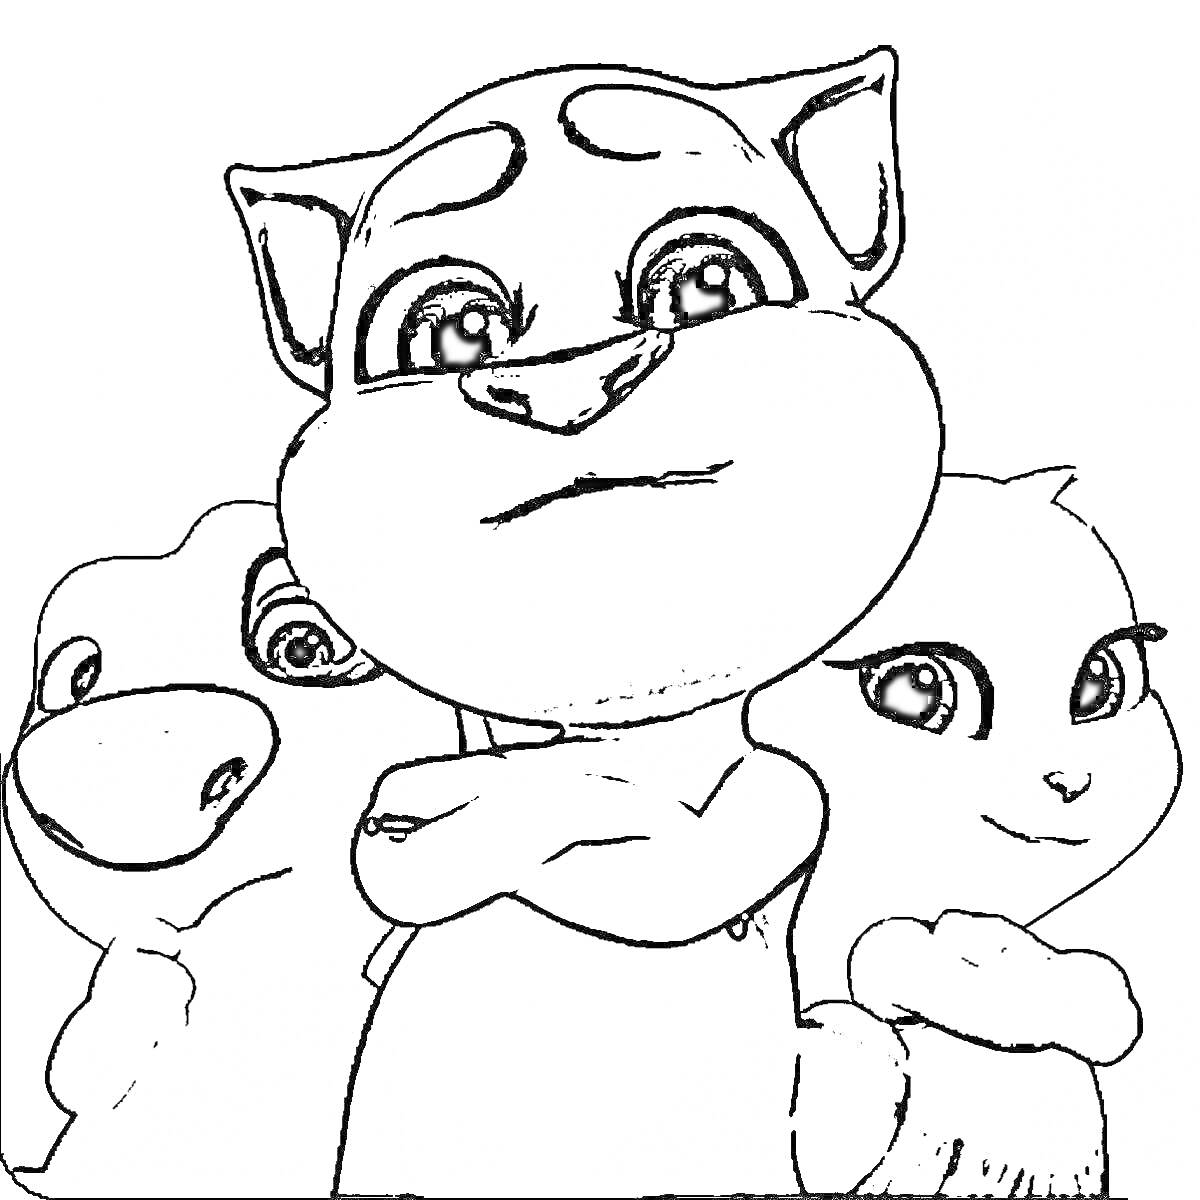 Раскраска Три мультяшных персонажа: центральный с языком, левый с одним видимым глазом, правый с милой улыбкой